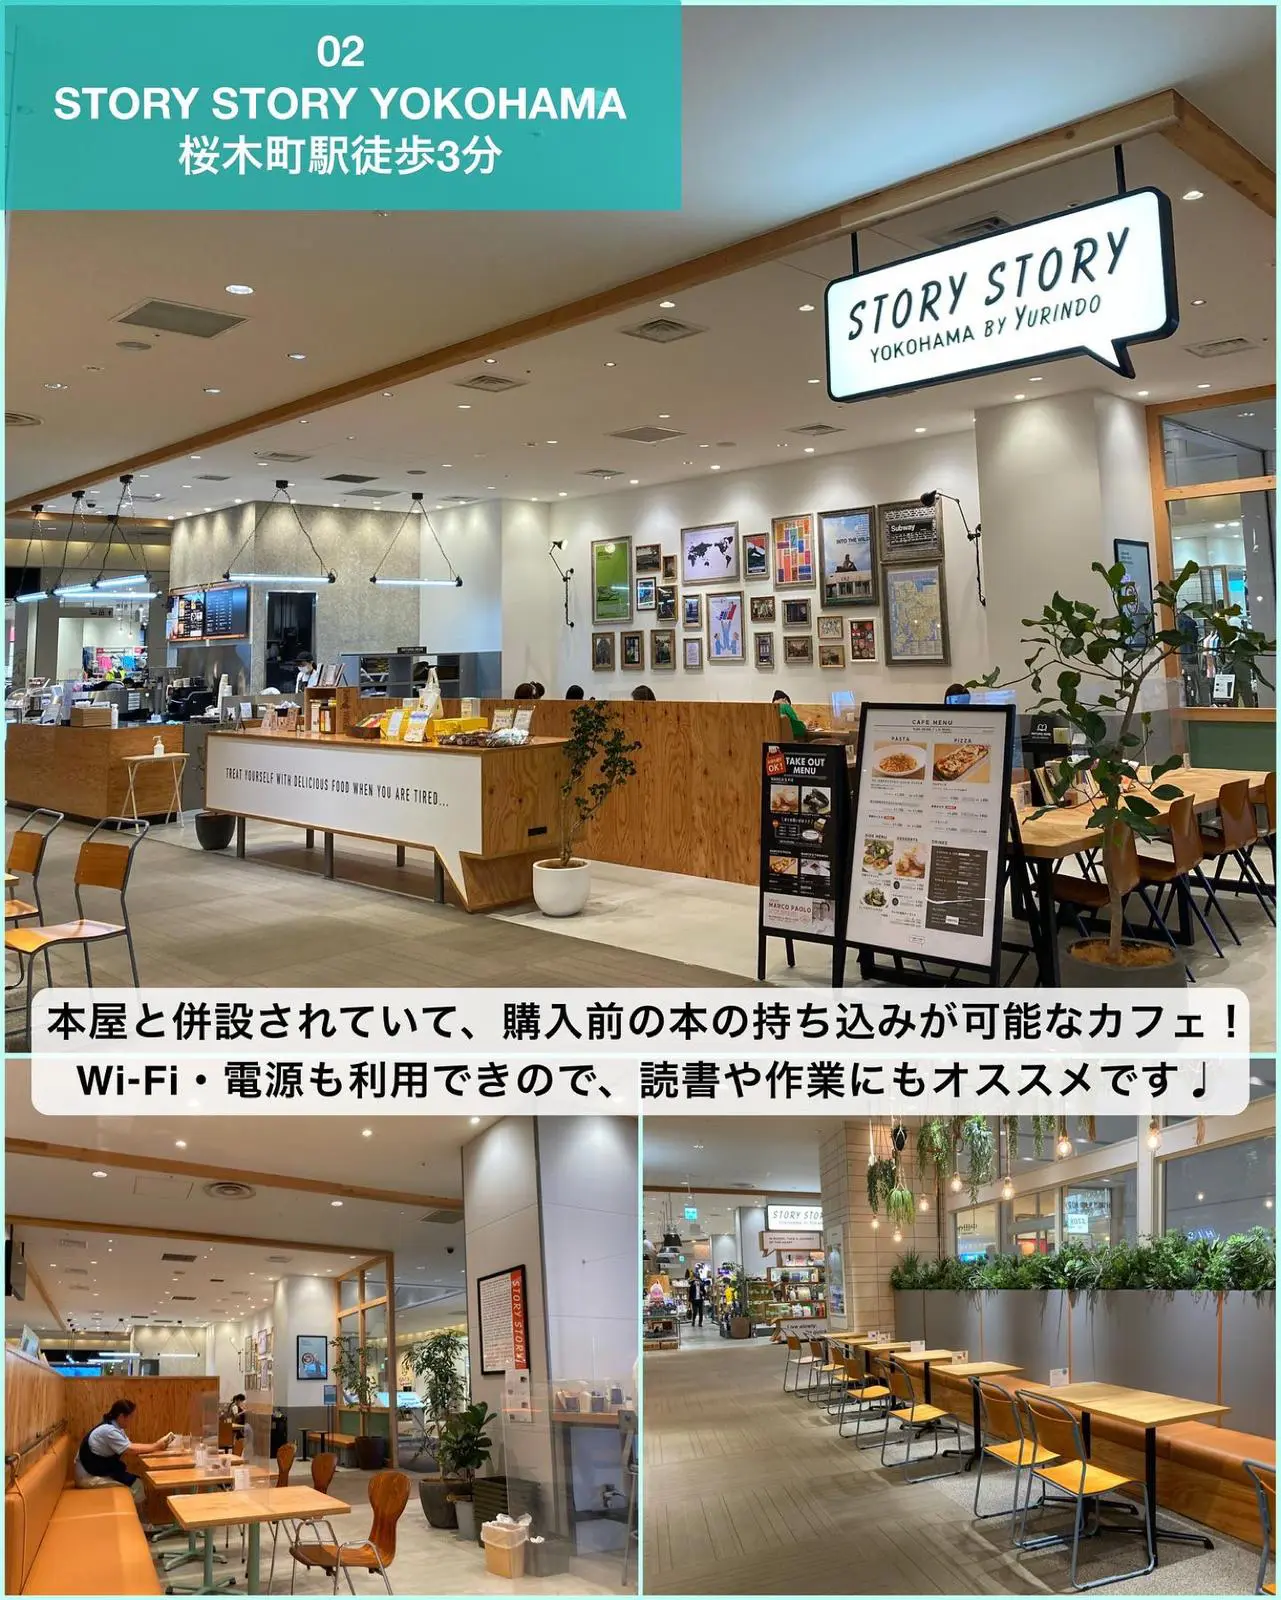 作業にもおすすめ ひとりで行きやすい横浜カフェ7選 ゆき カフェ巡り 東京 神奈川が投稿したフォトブック Lemon8